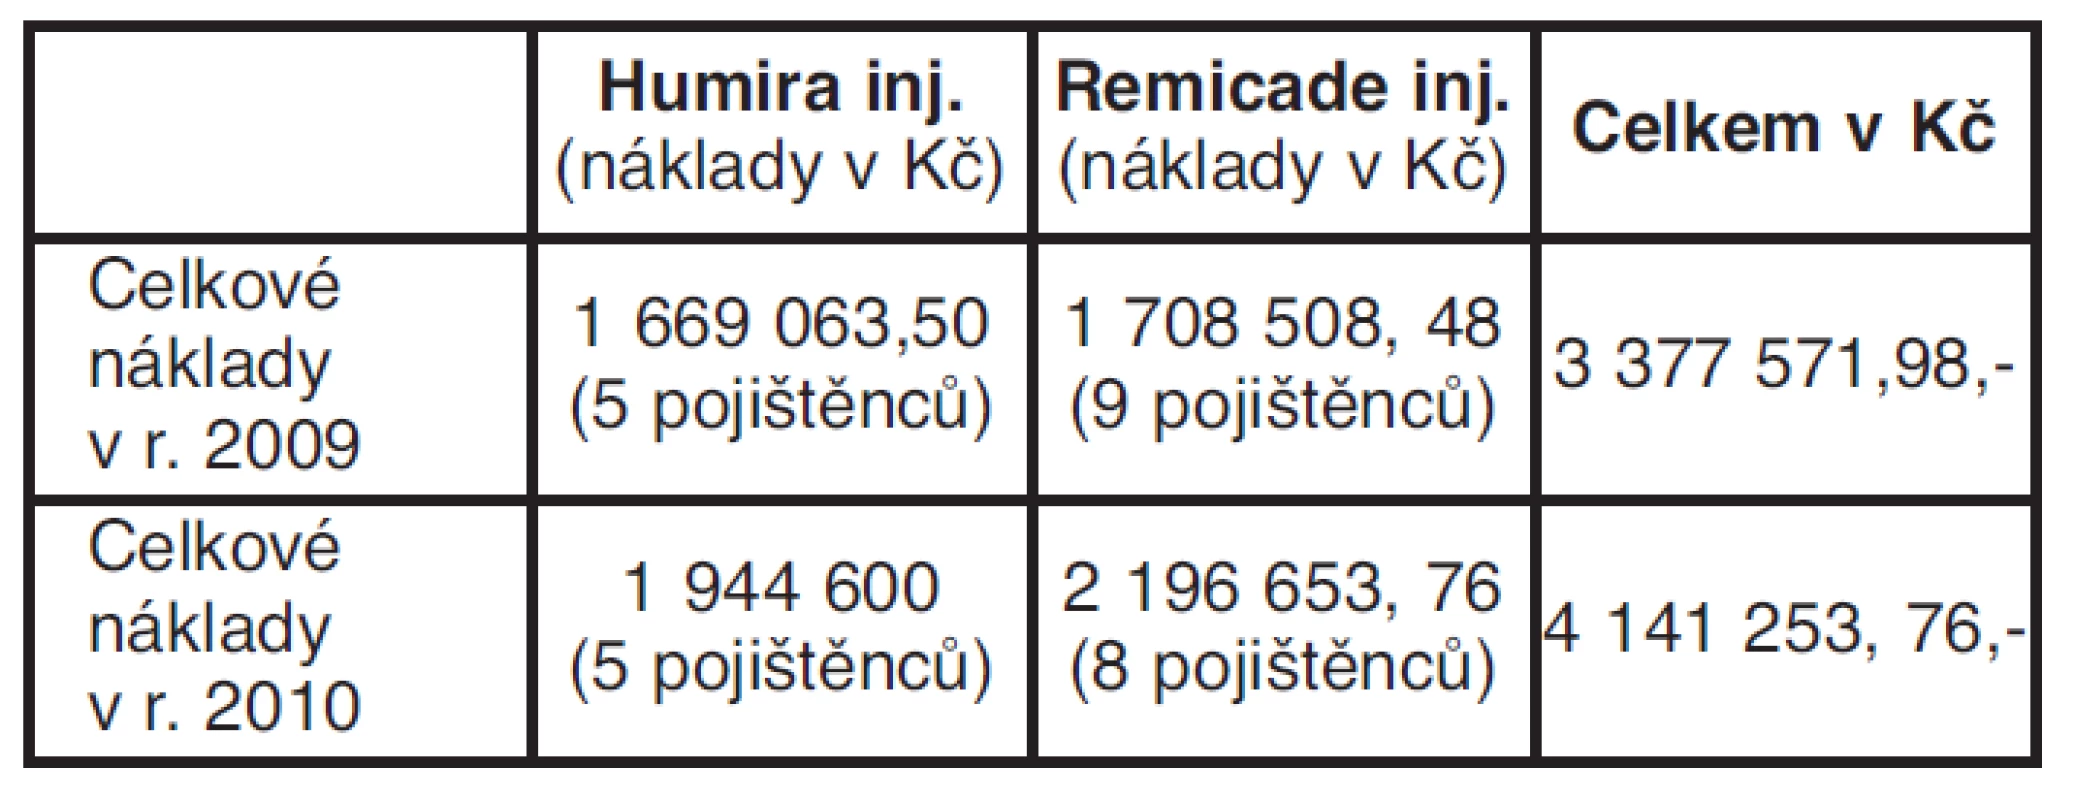 Celkové vyčíslení nákladů na biologickou léčbu léčivými
přípravky Humira a Remicade inj. v období r. 2009 a 2010